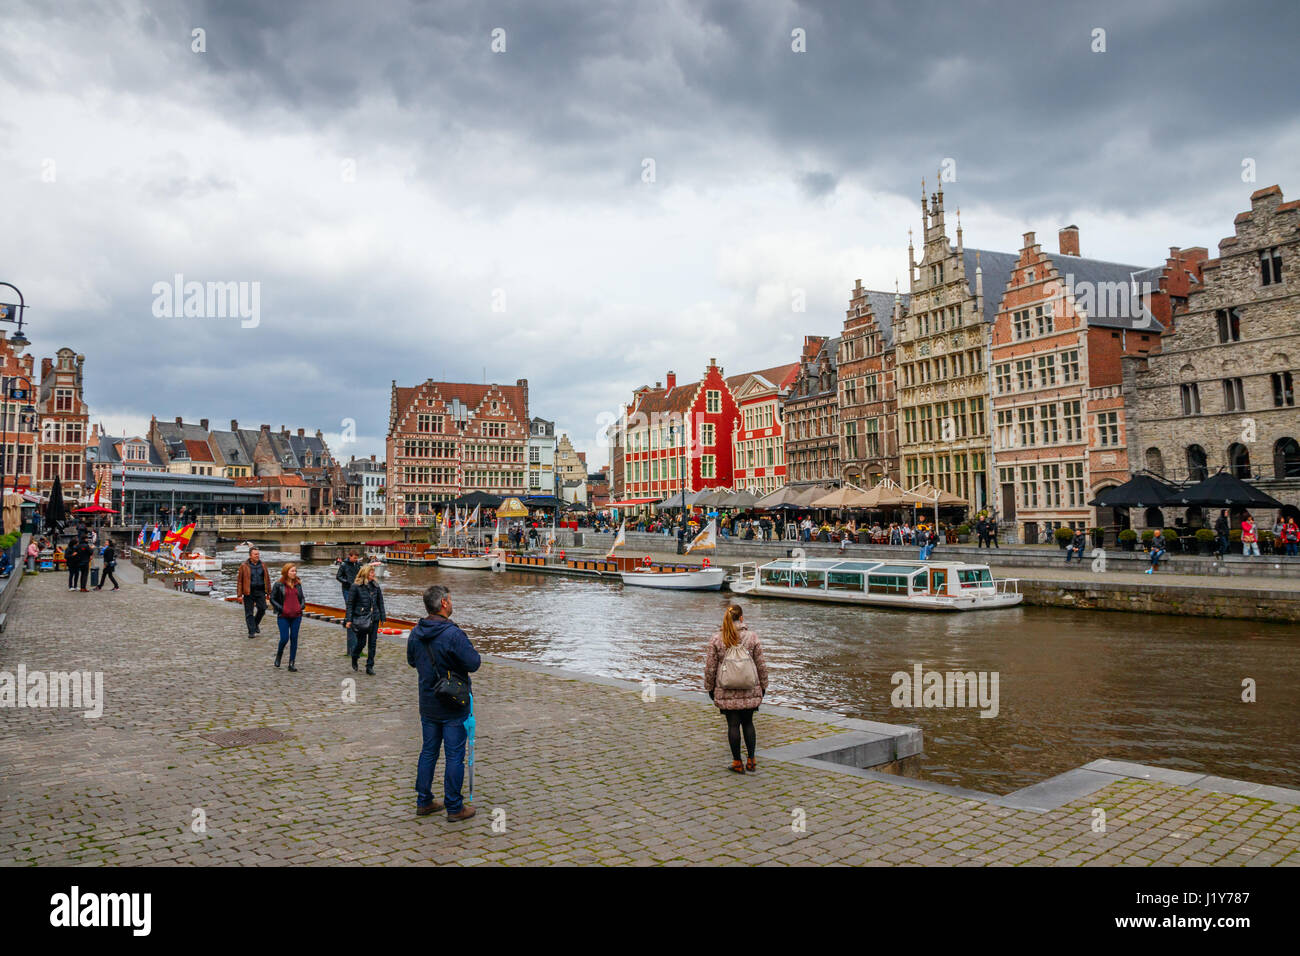 Ansicht der Graslei (Gras Quay) und der Korenlei (Mais Quay) mit mittelalterlichen Gebäuden und nicht identifizierten Touristen an einem bewölkten Tag. Gent, Belgien. Stockfoto